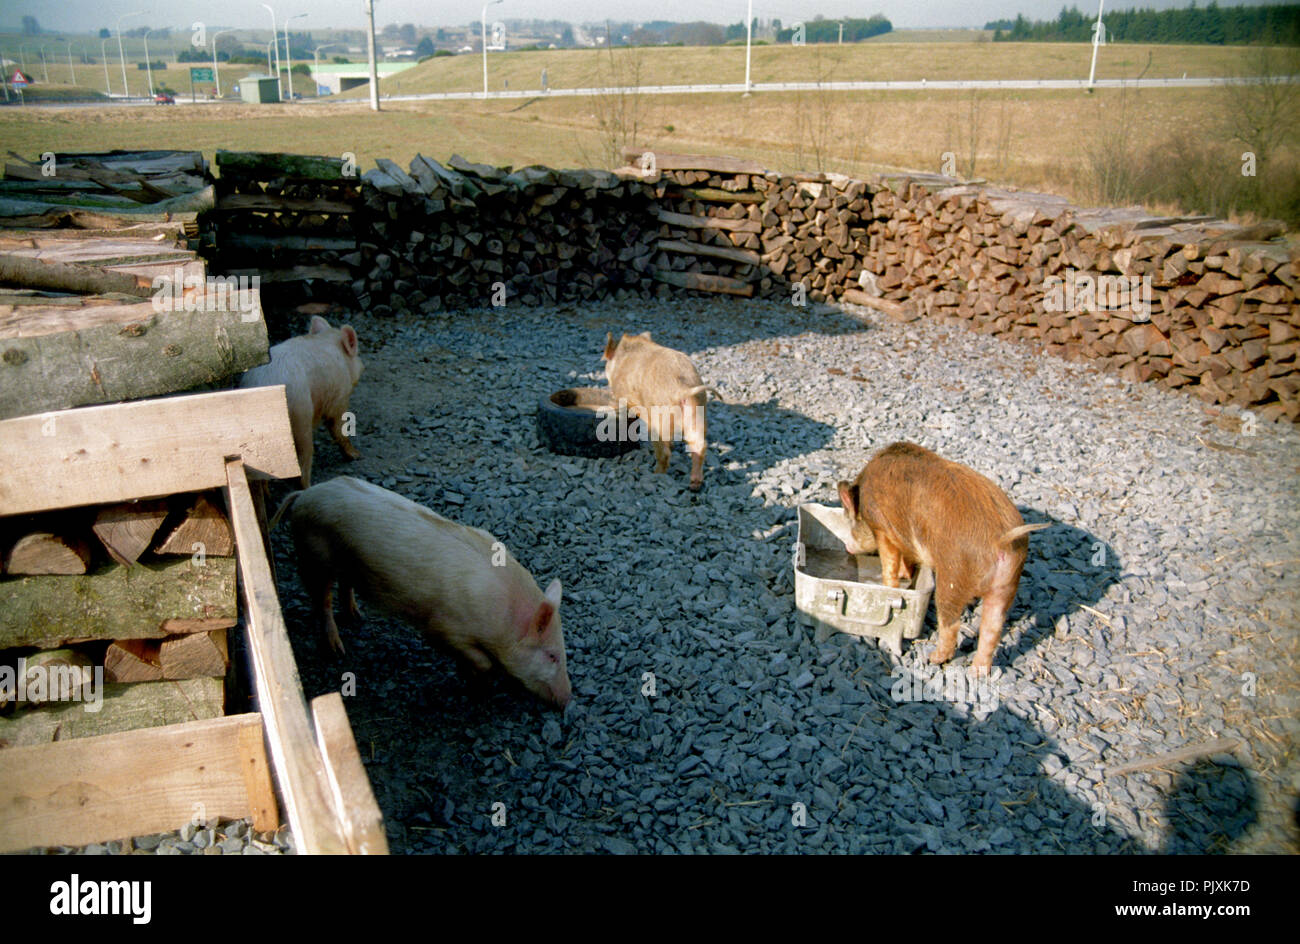 The wild boar farm 'La Ferme des Sanglochons' in Neufchâteau (Belgium, 05/1993) Stock Photo